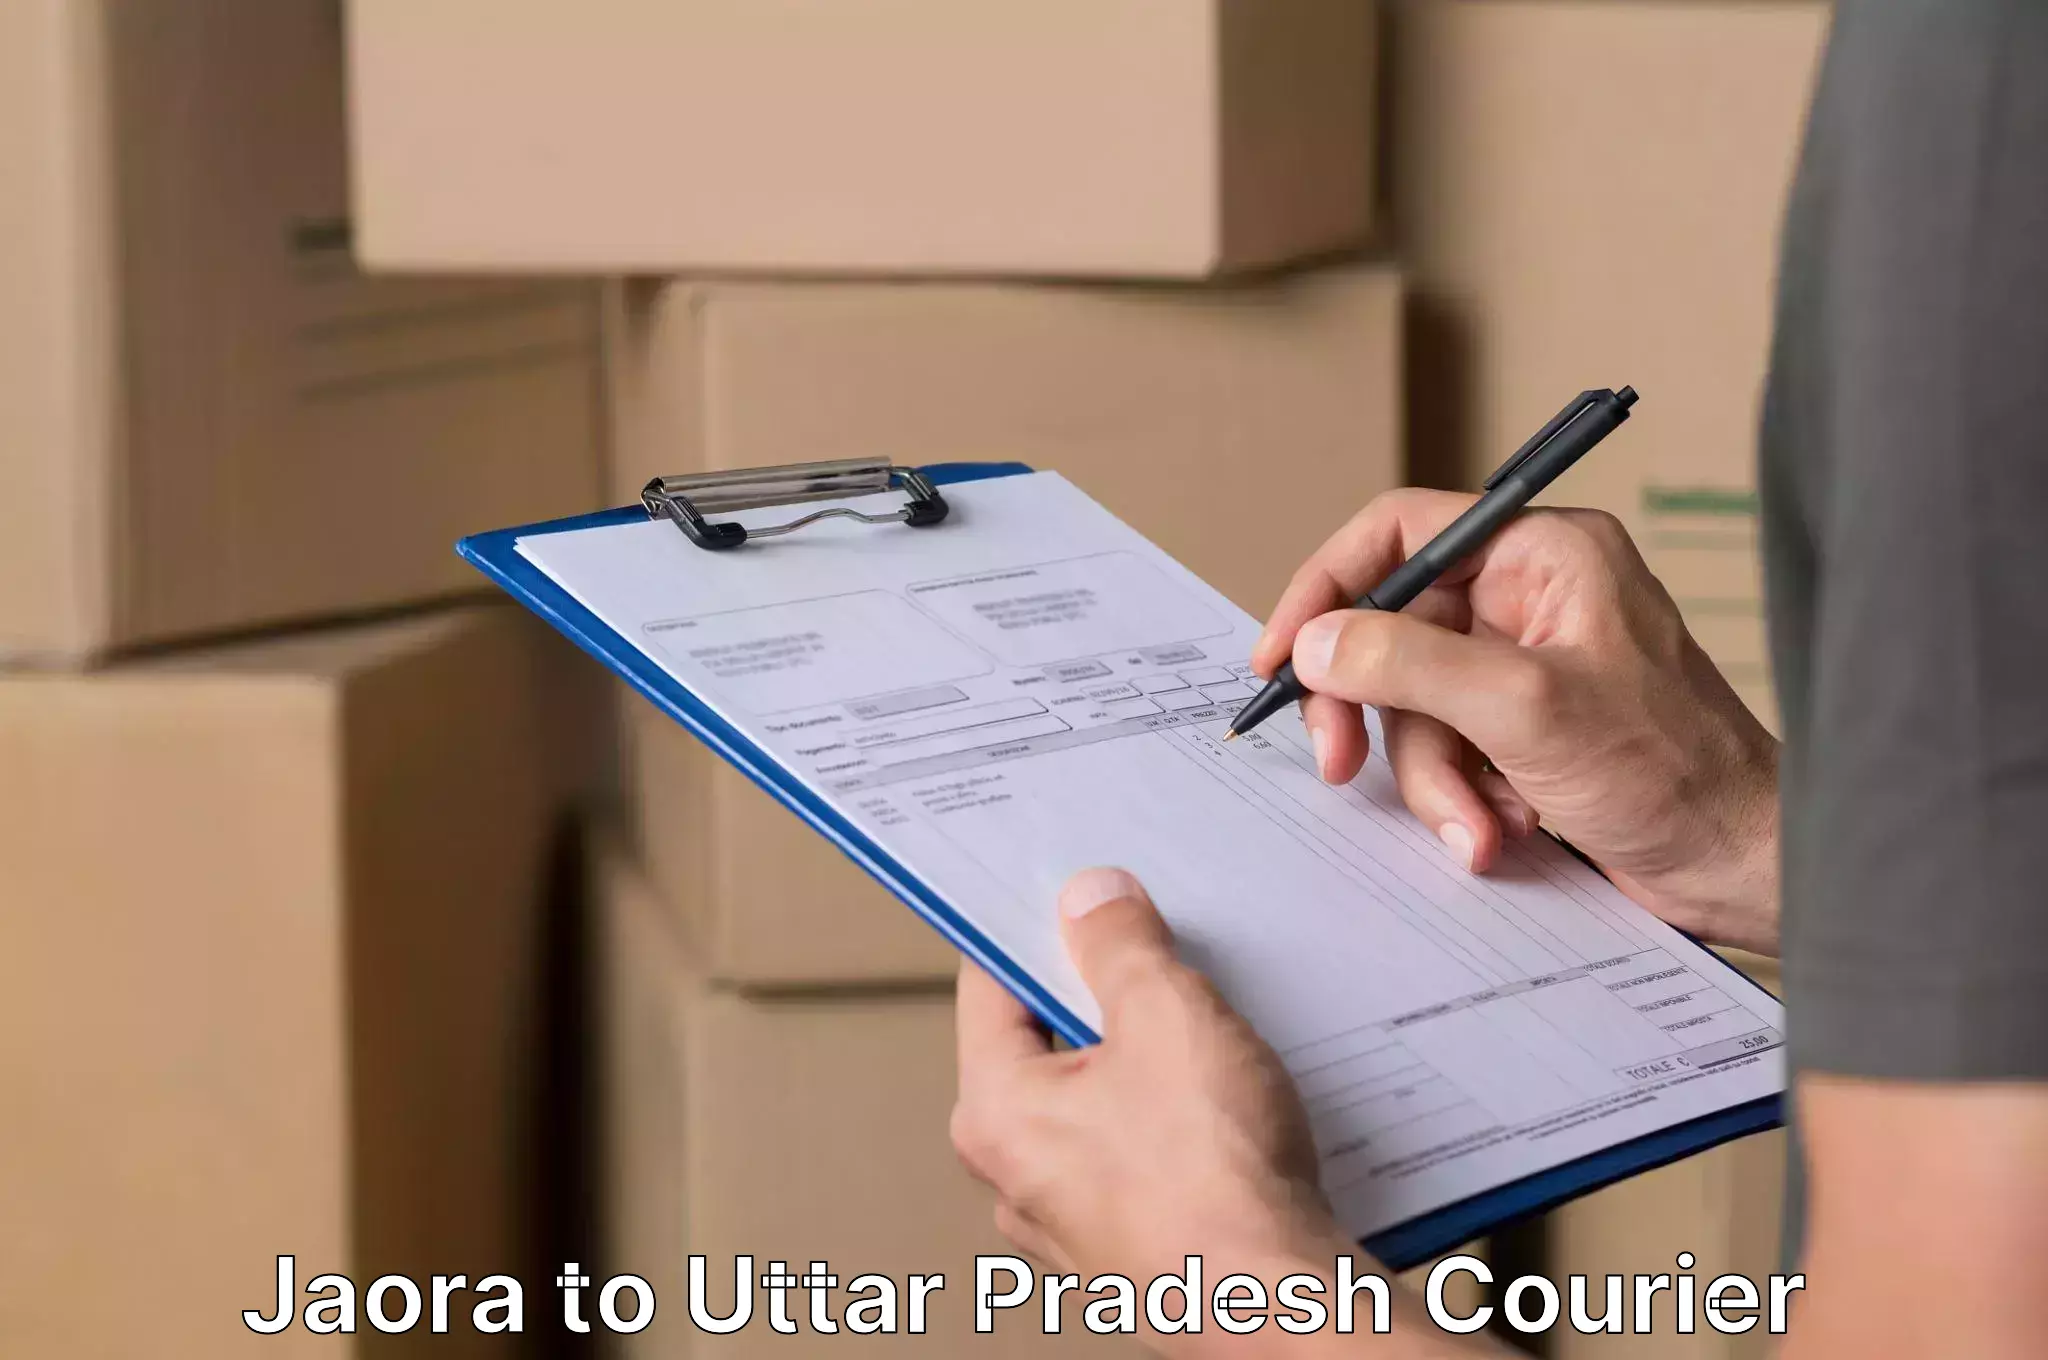 Furniture delivery service Jaora to Baksha